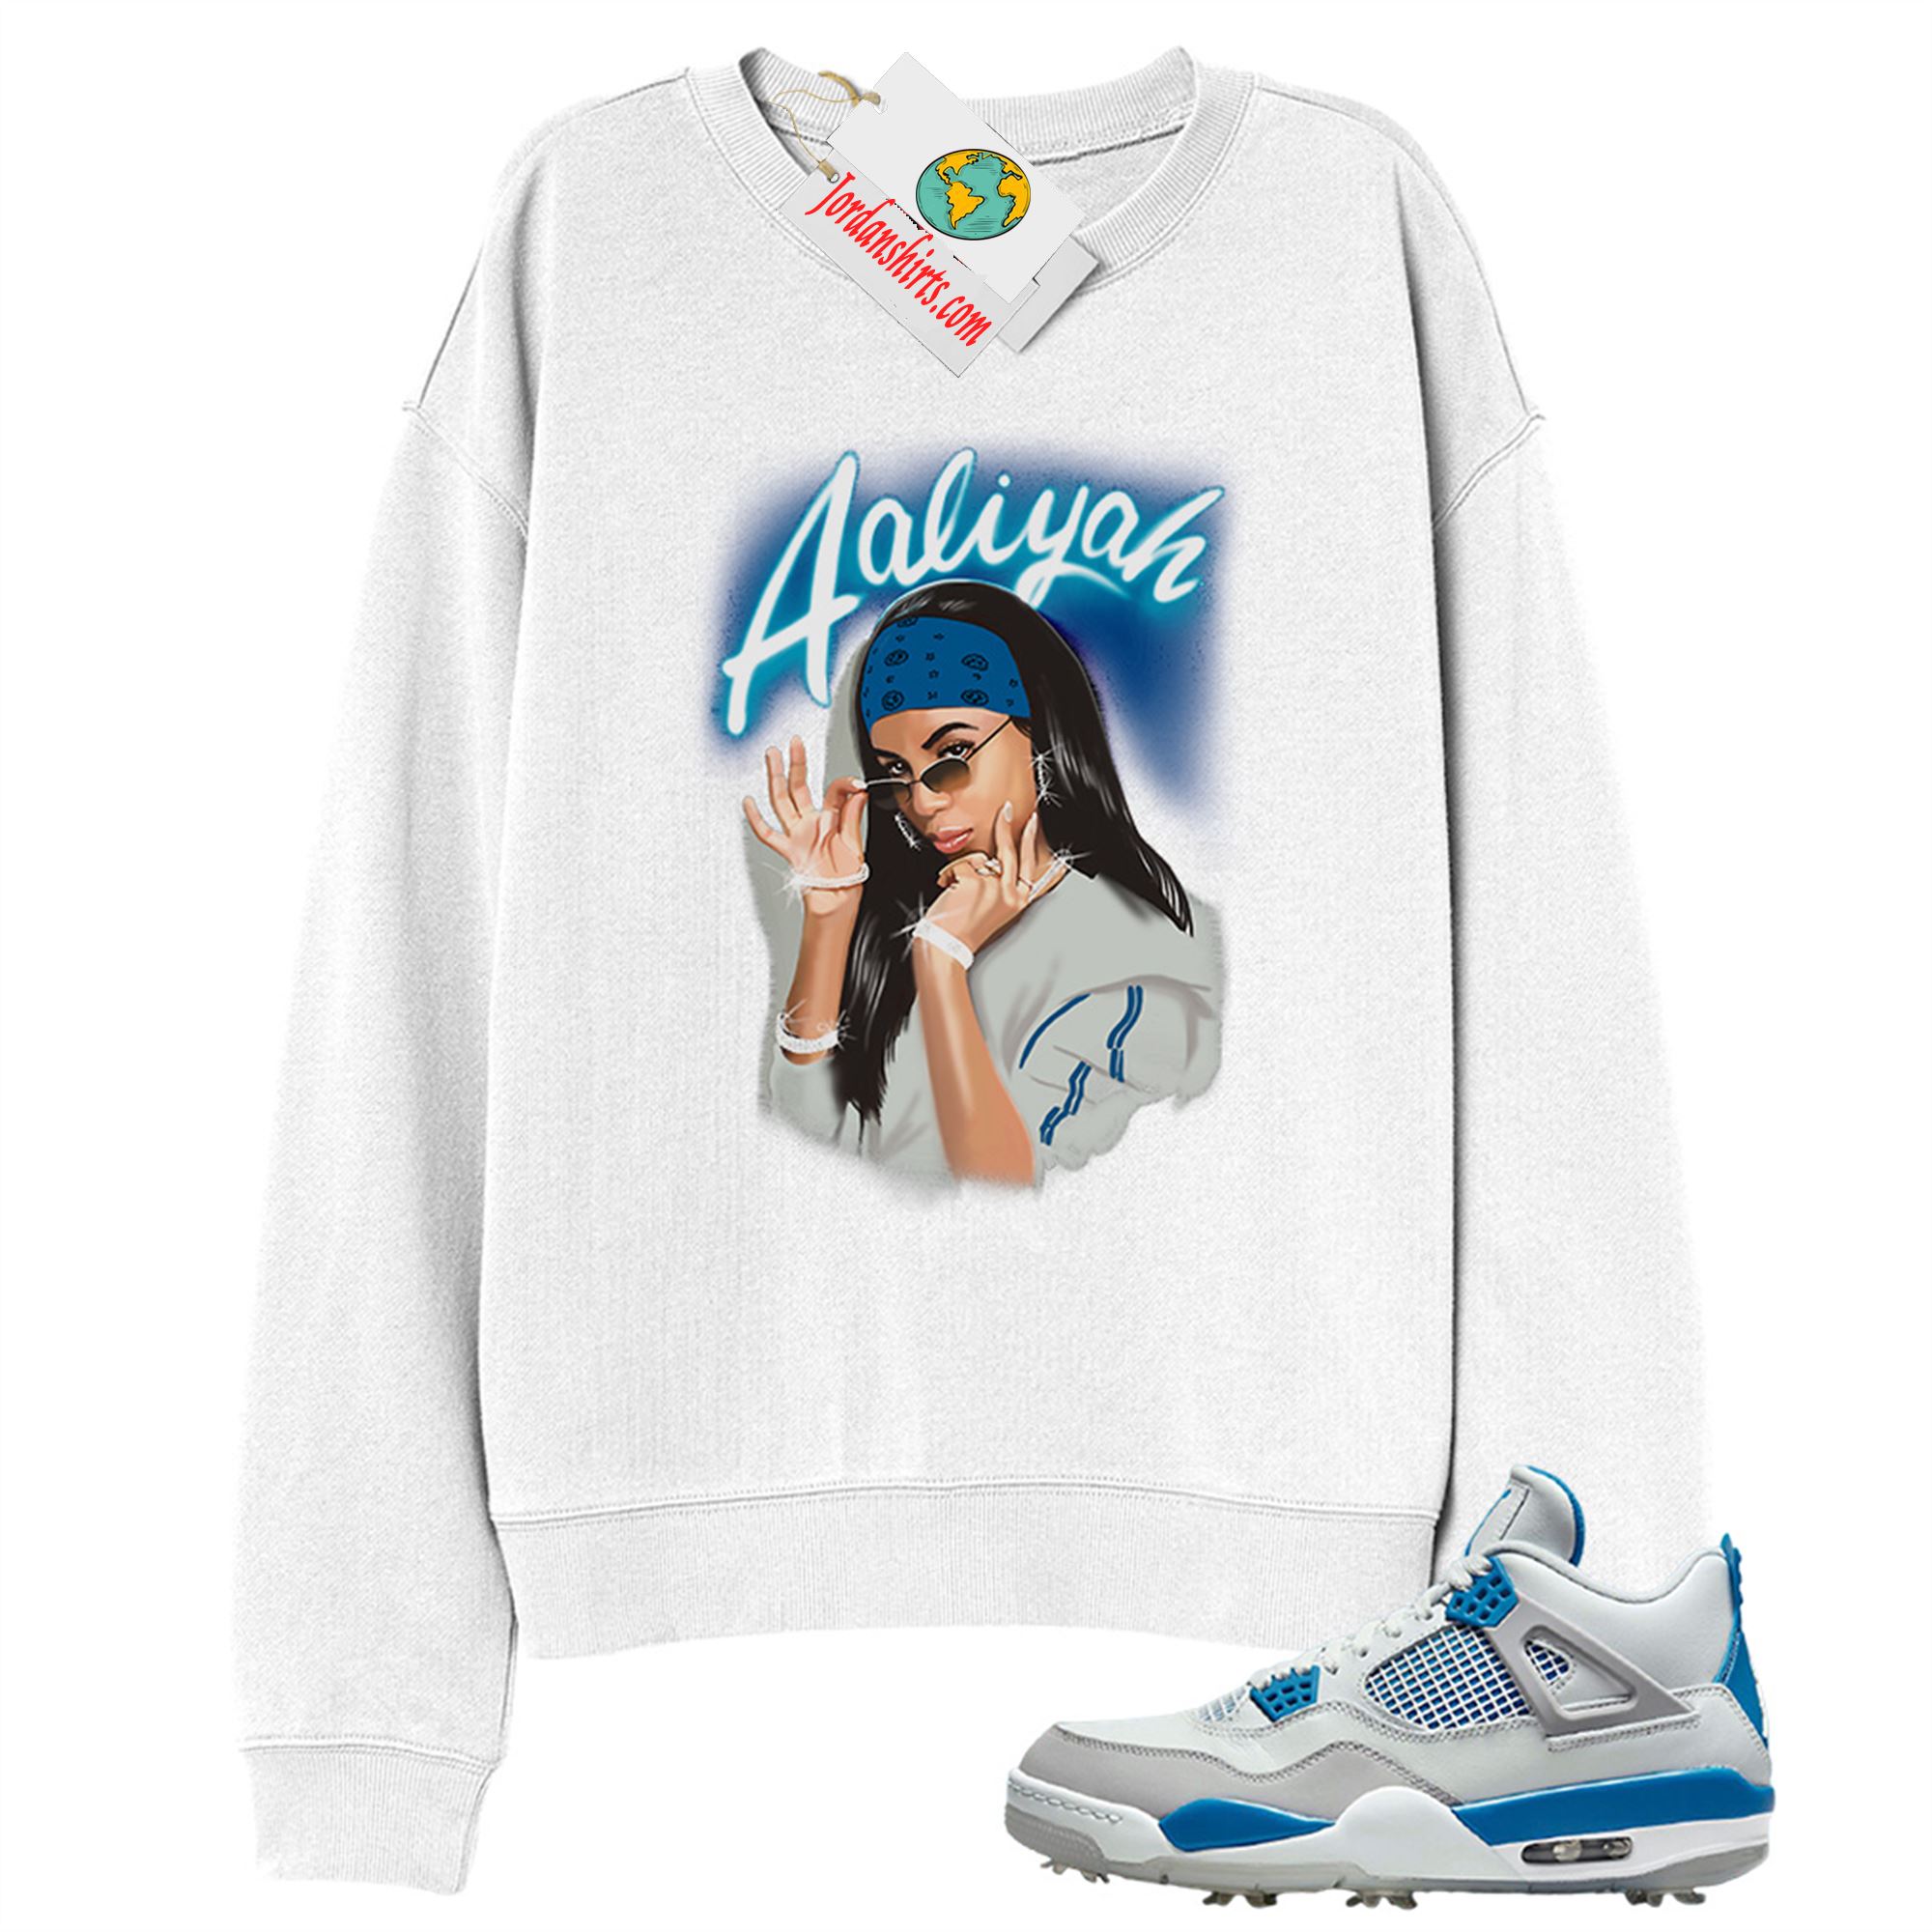 Jordan 4 Sweatshirt, Aaliyah Airbrush White Sweatshirt Air Jordan 4 Golf Military Blue 4s Size Up To 5xl